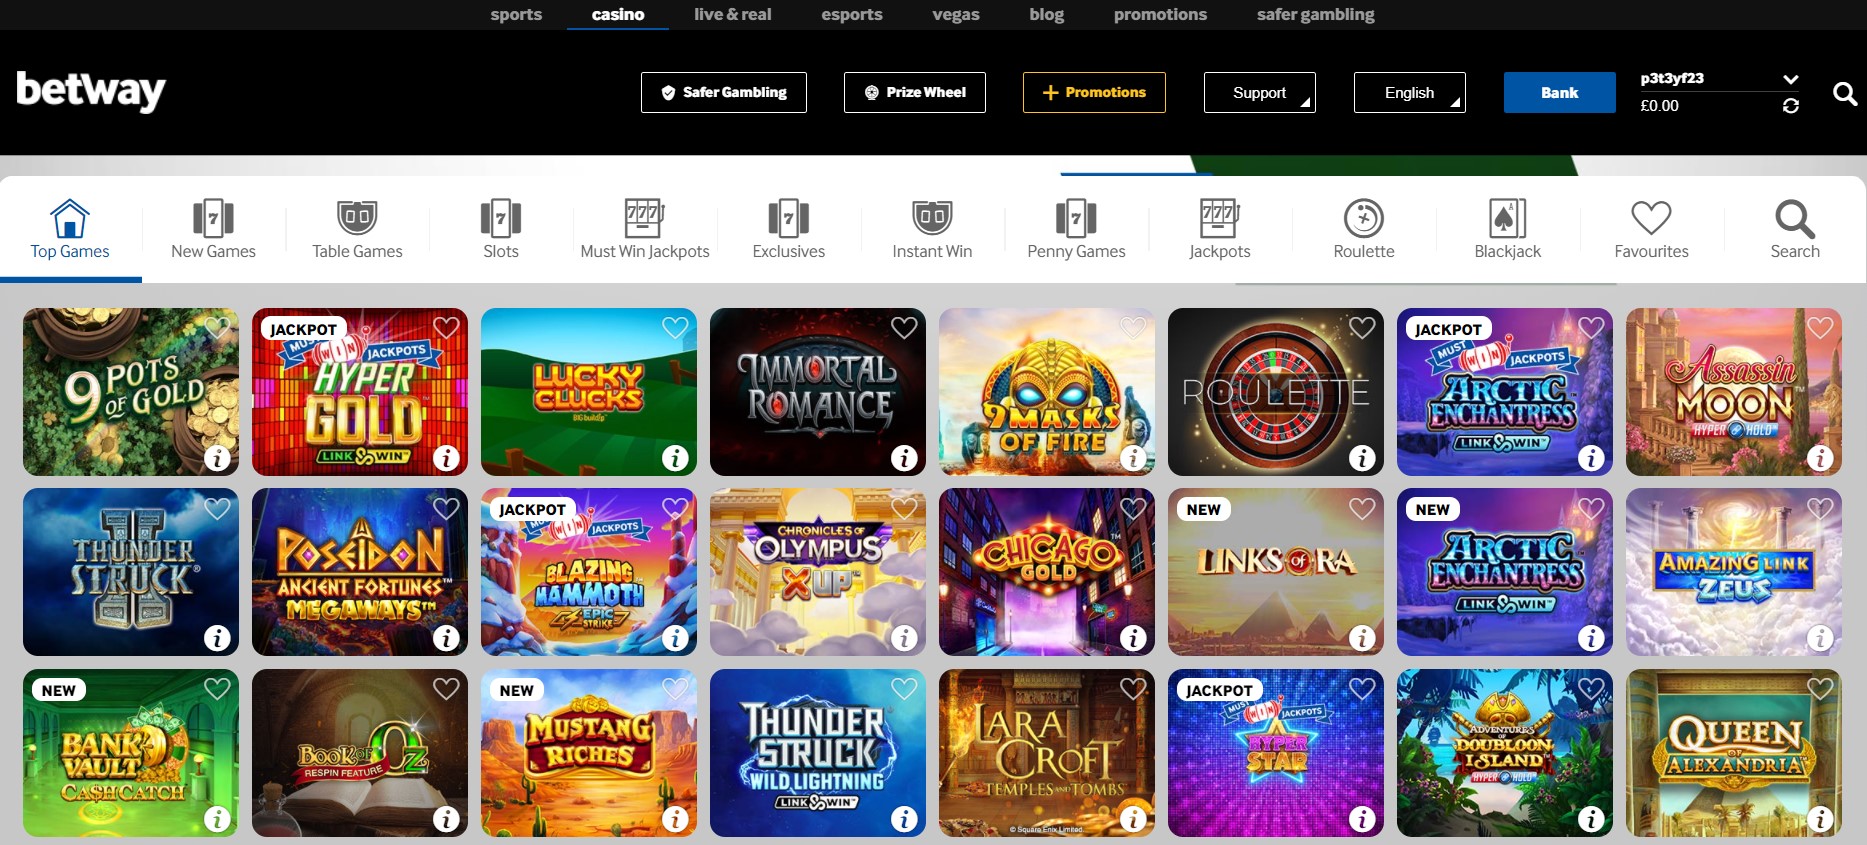 betway - excellent online casino in Dubai